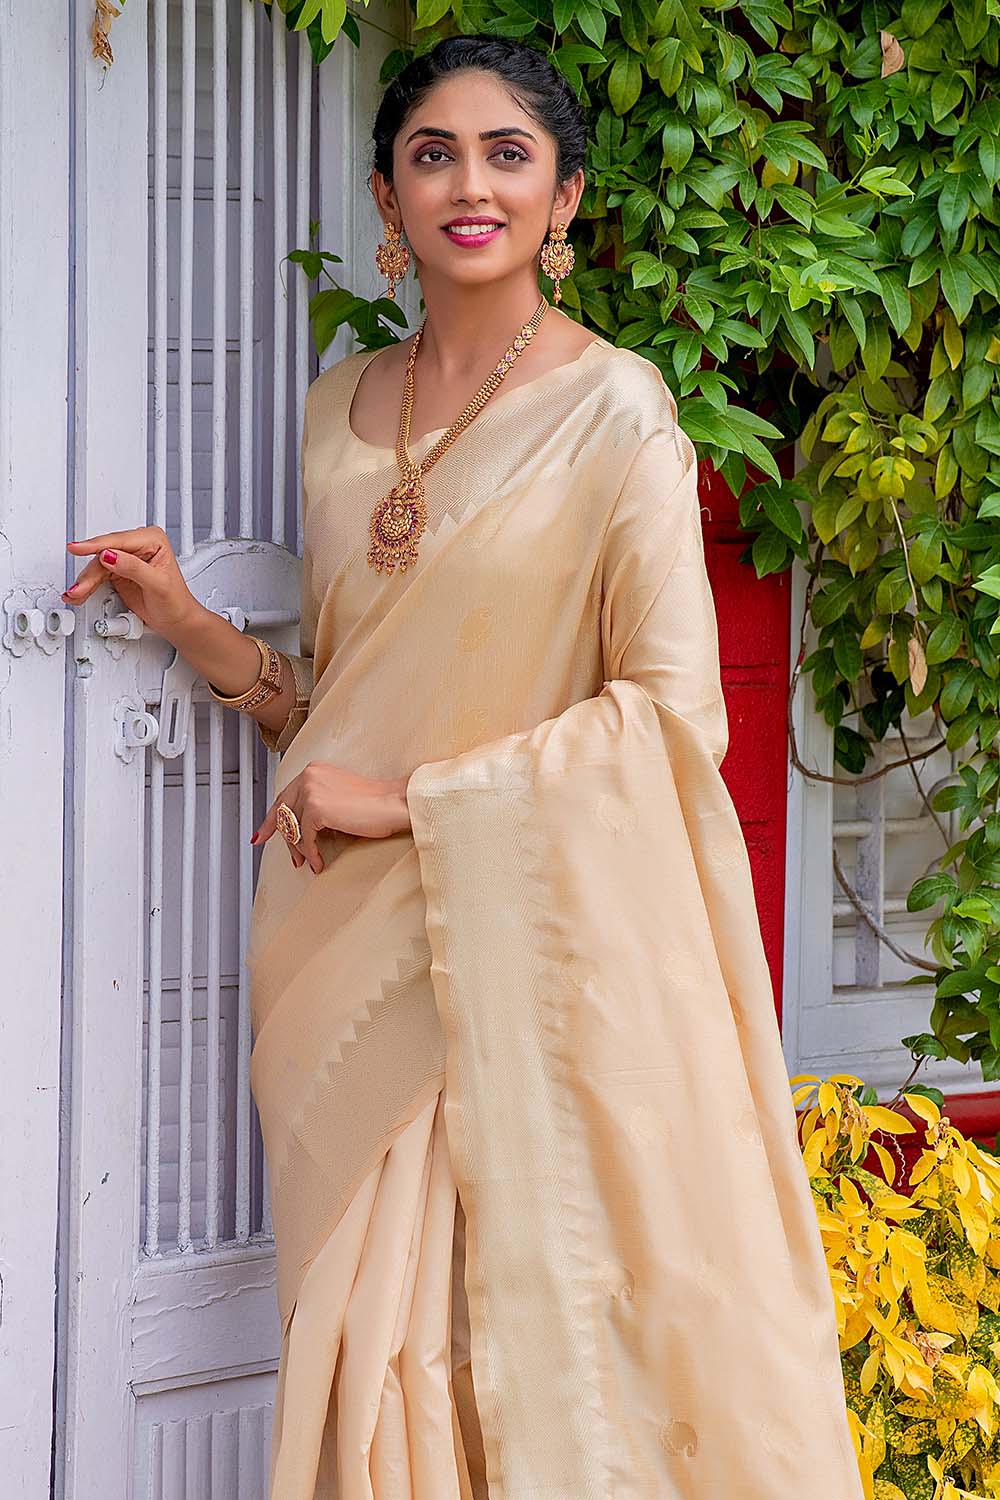 Buy Cream Banarasi Saree With Matching Blouse Piece Online - Kalki Fashion